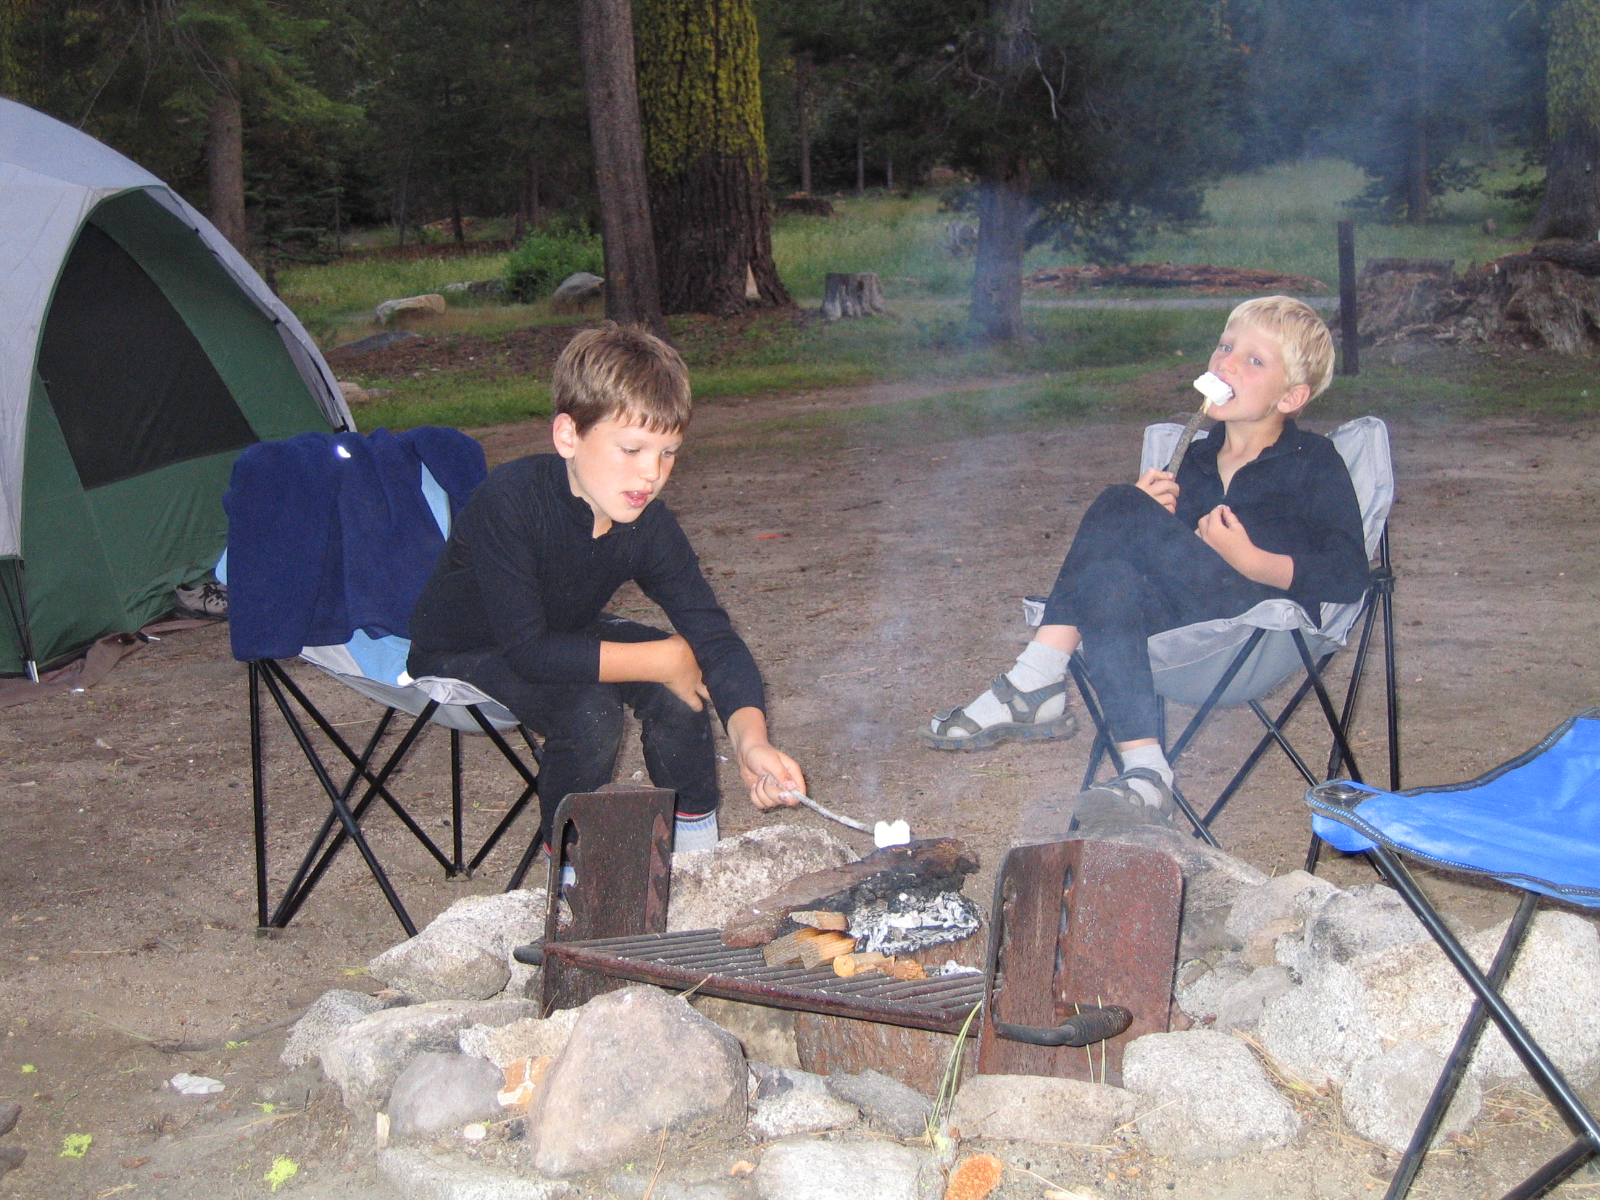 Annual camping ritual